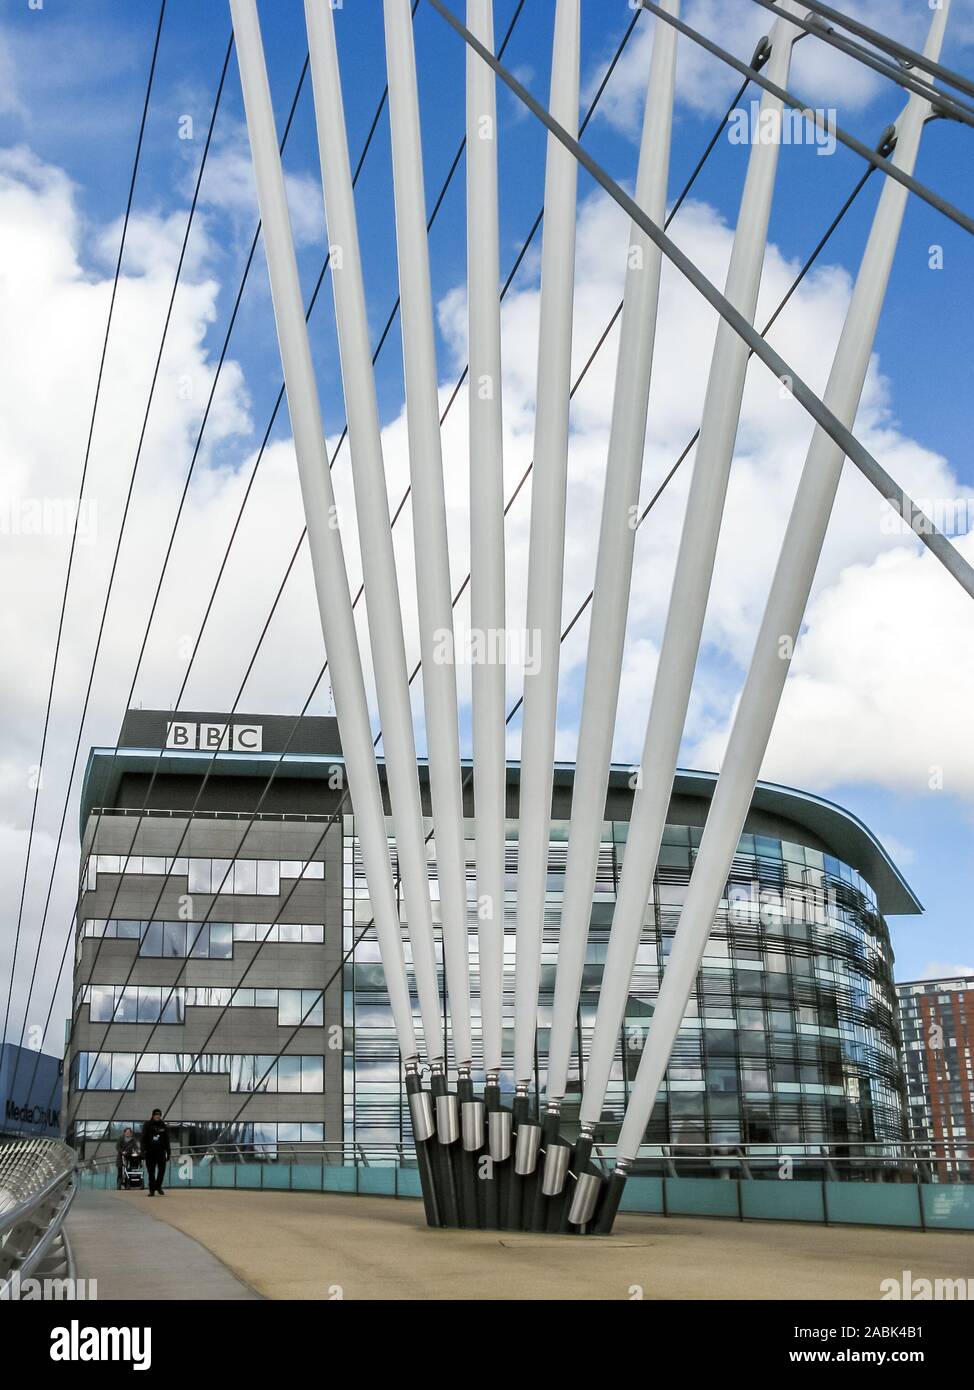 Passerelle et BBC bâtiment de bureaux, MediaCityUK, Salford Quays, Manchester, Angleterre, RU Banque D'Images